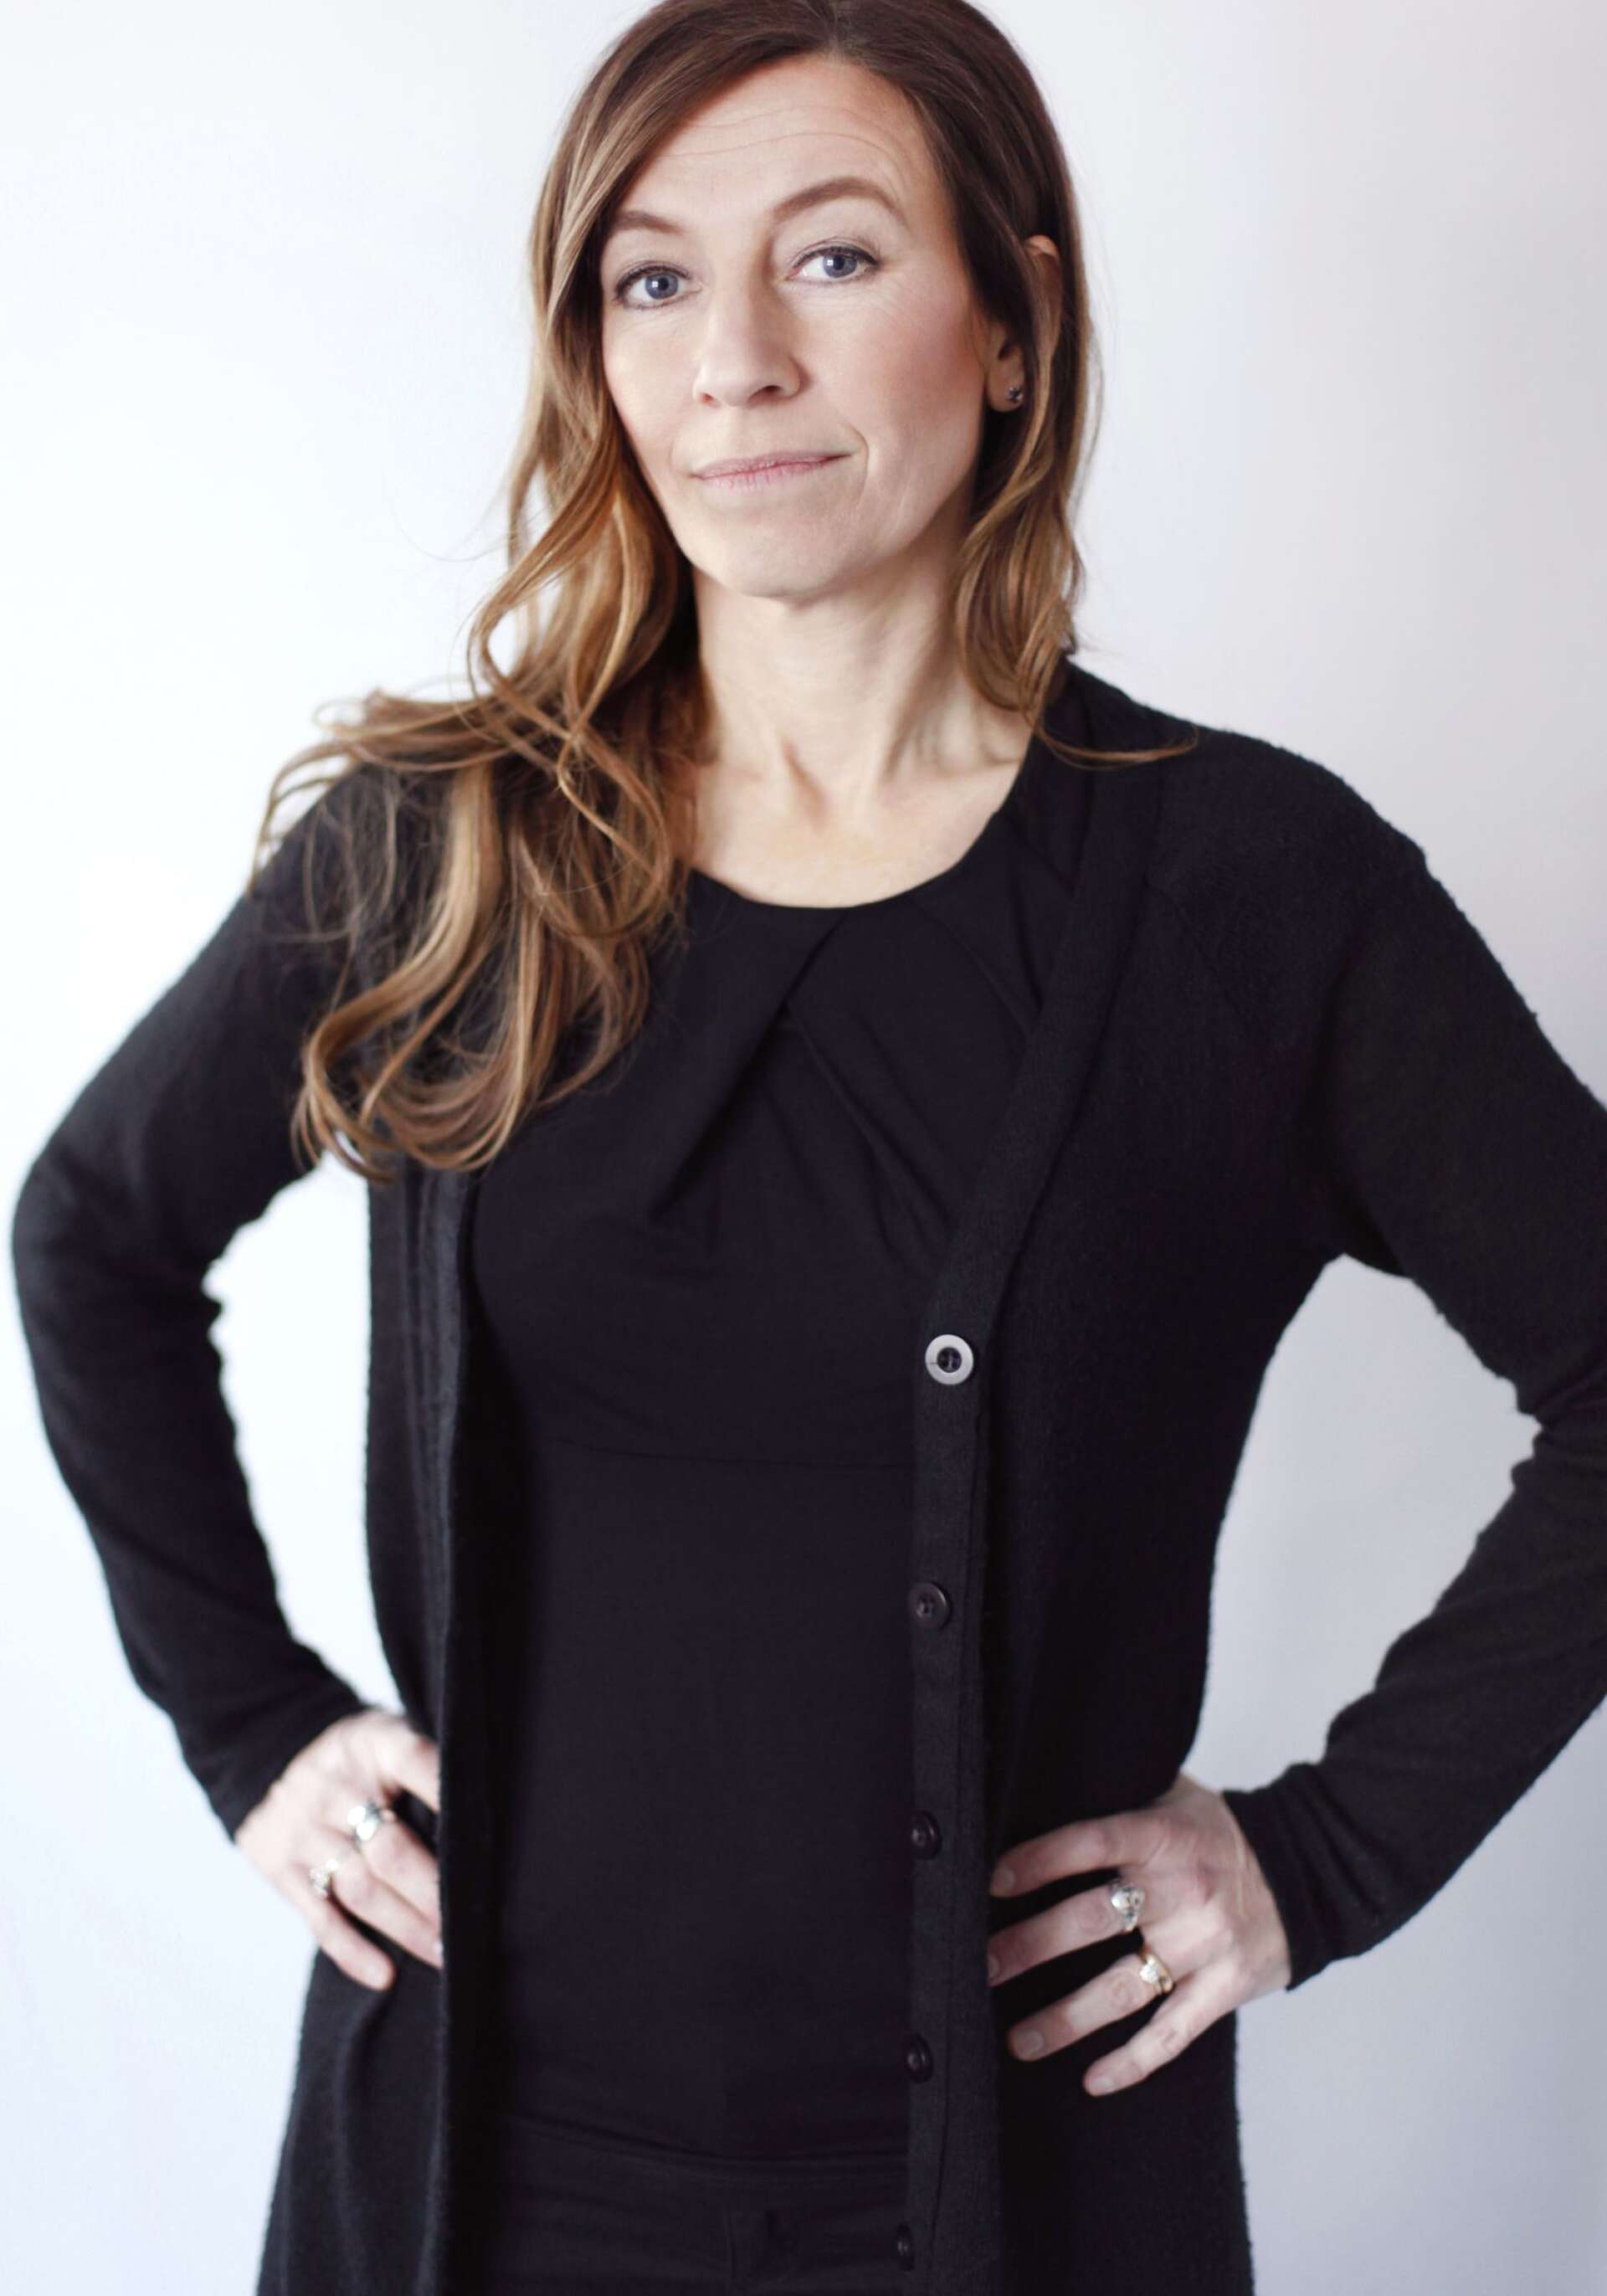 Linda Åkerström är författaren och journalisten som har skrivit fantasyserien om Bloksberg.